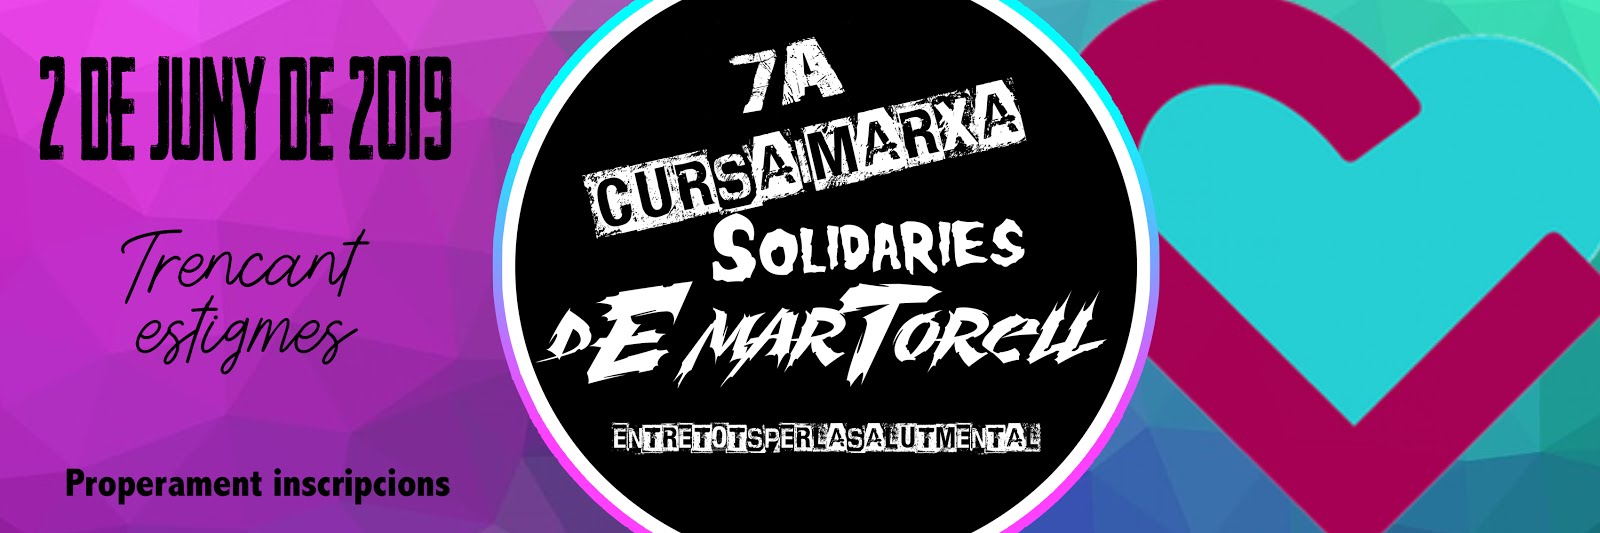 7ª CURSA I MARXA SOLIDÀRIES DE MARTORELL  07-06-2015